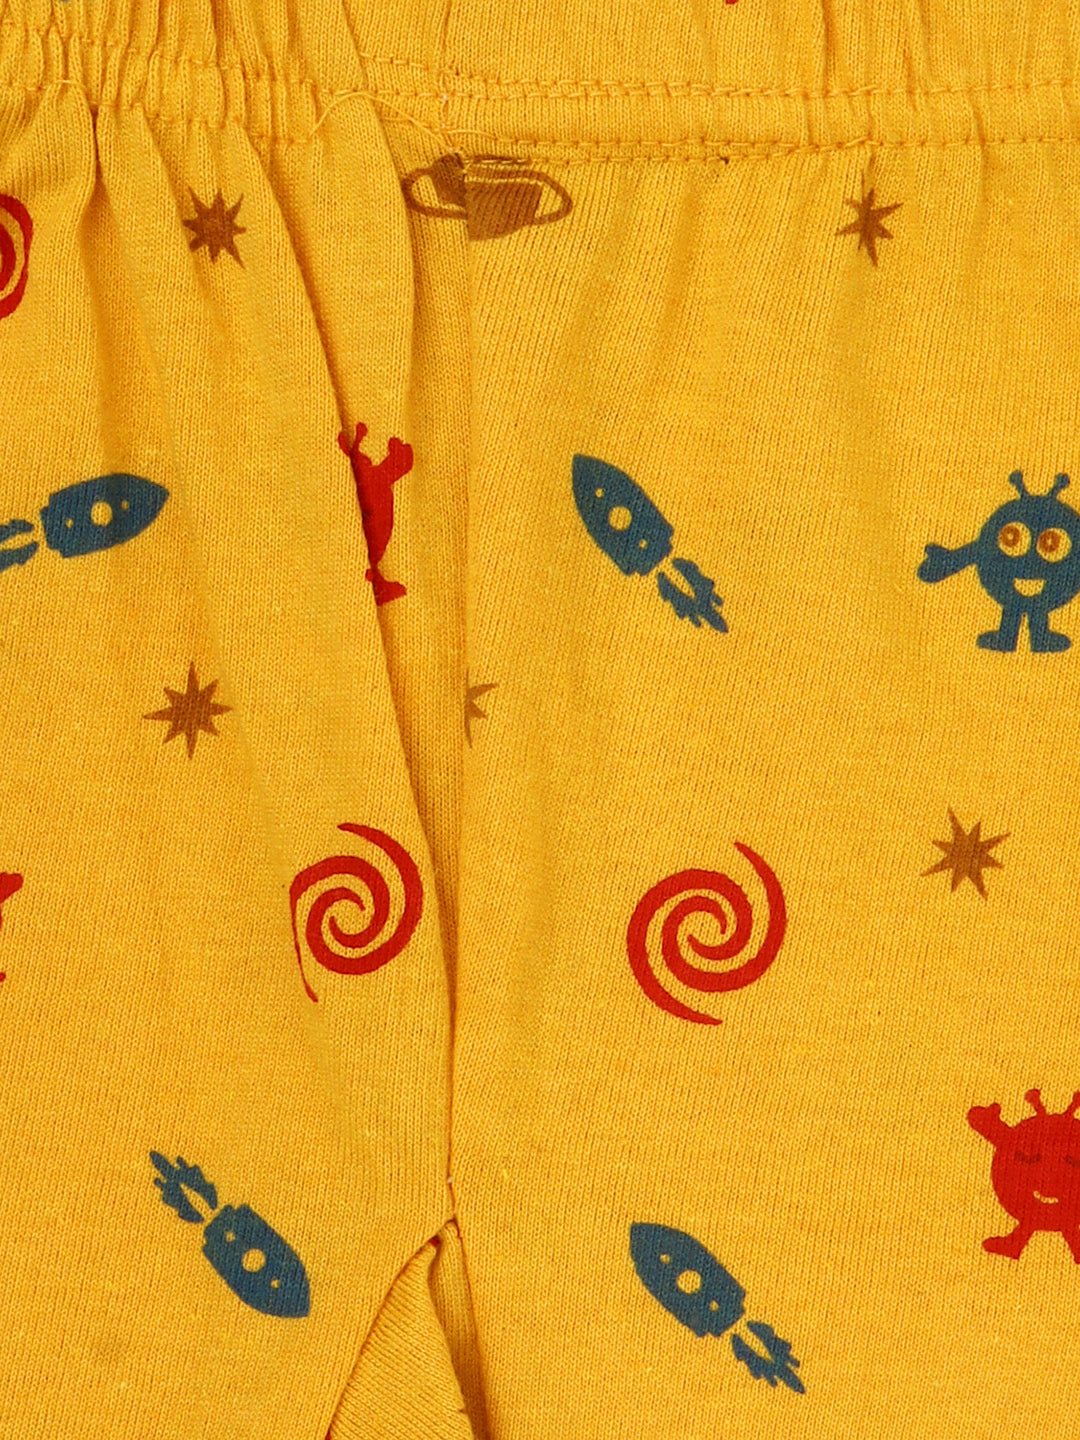 Unisex Kids Space Theme Cotton Printed Pyjamas - Pack of 5